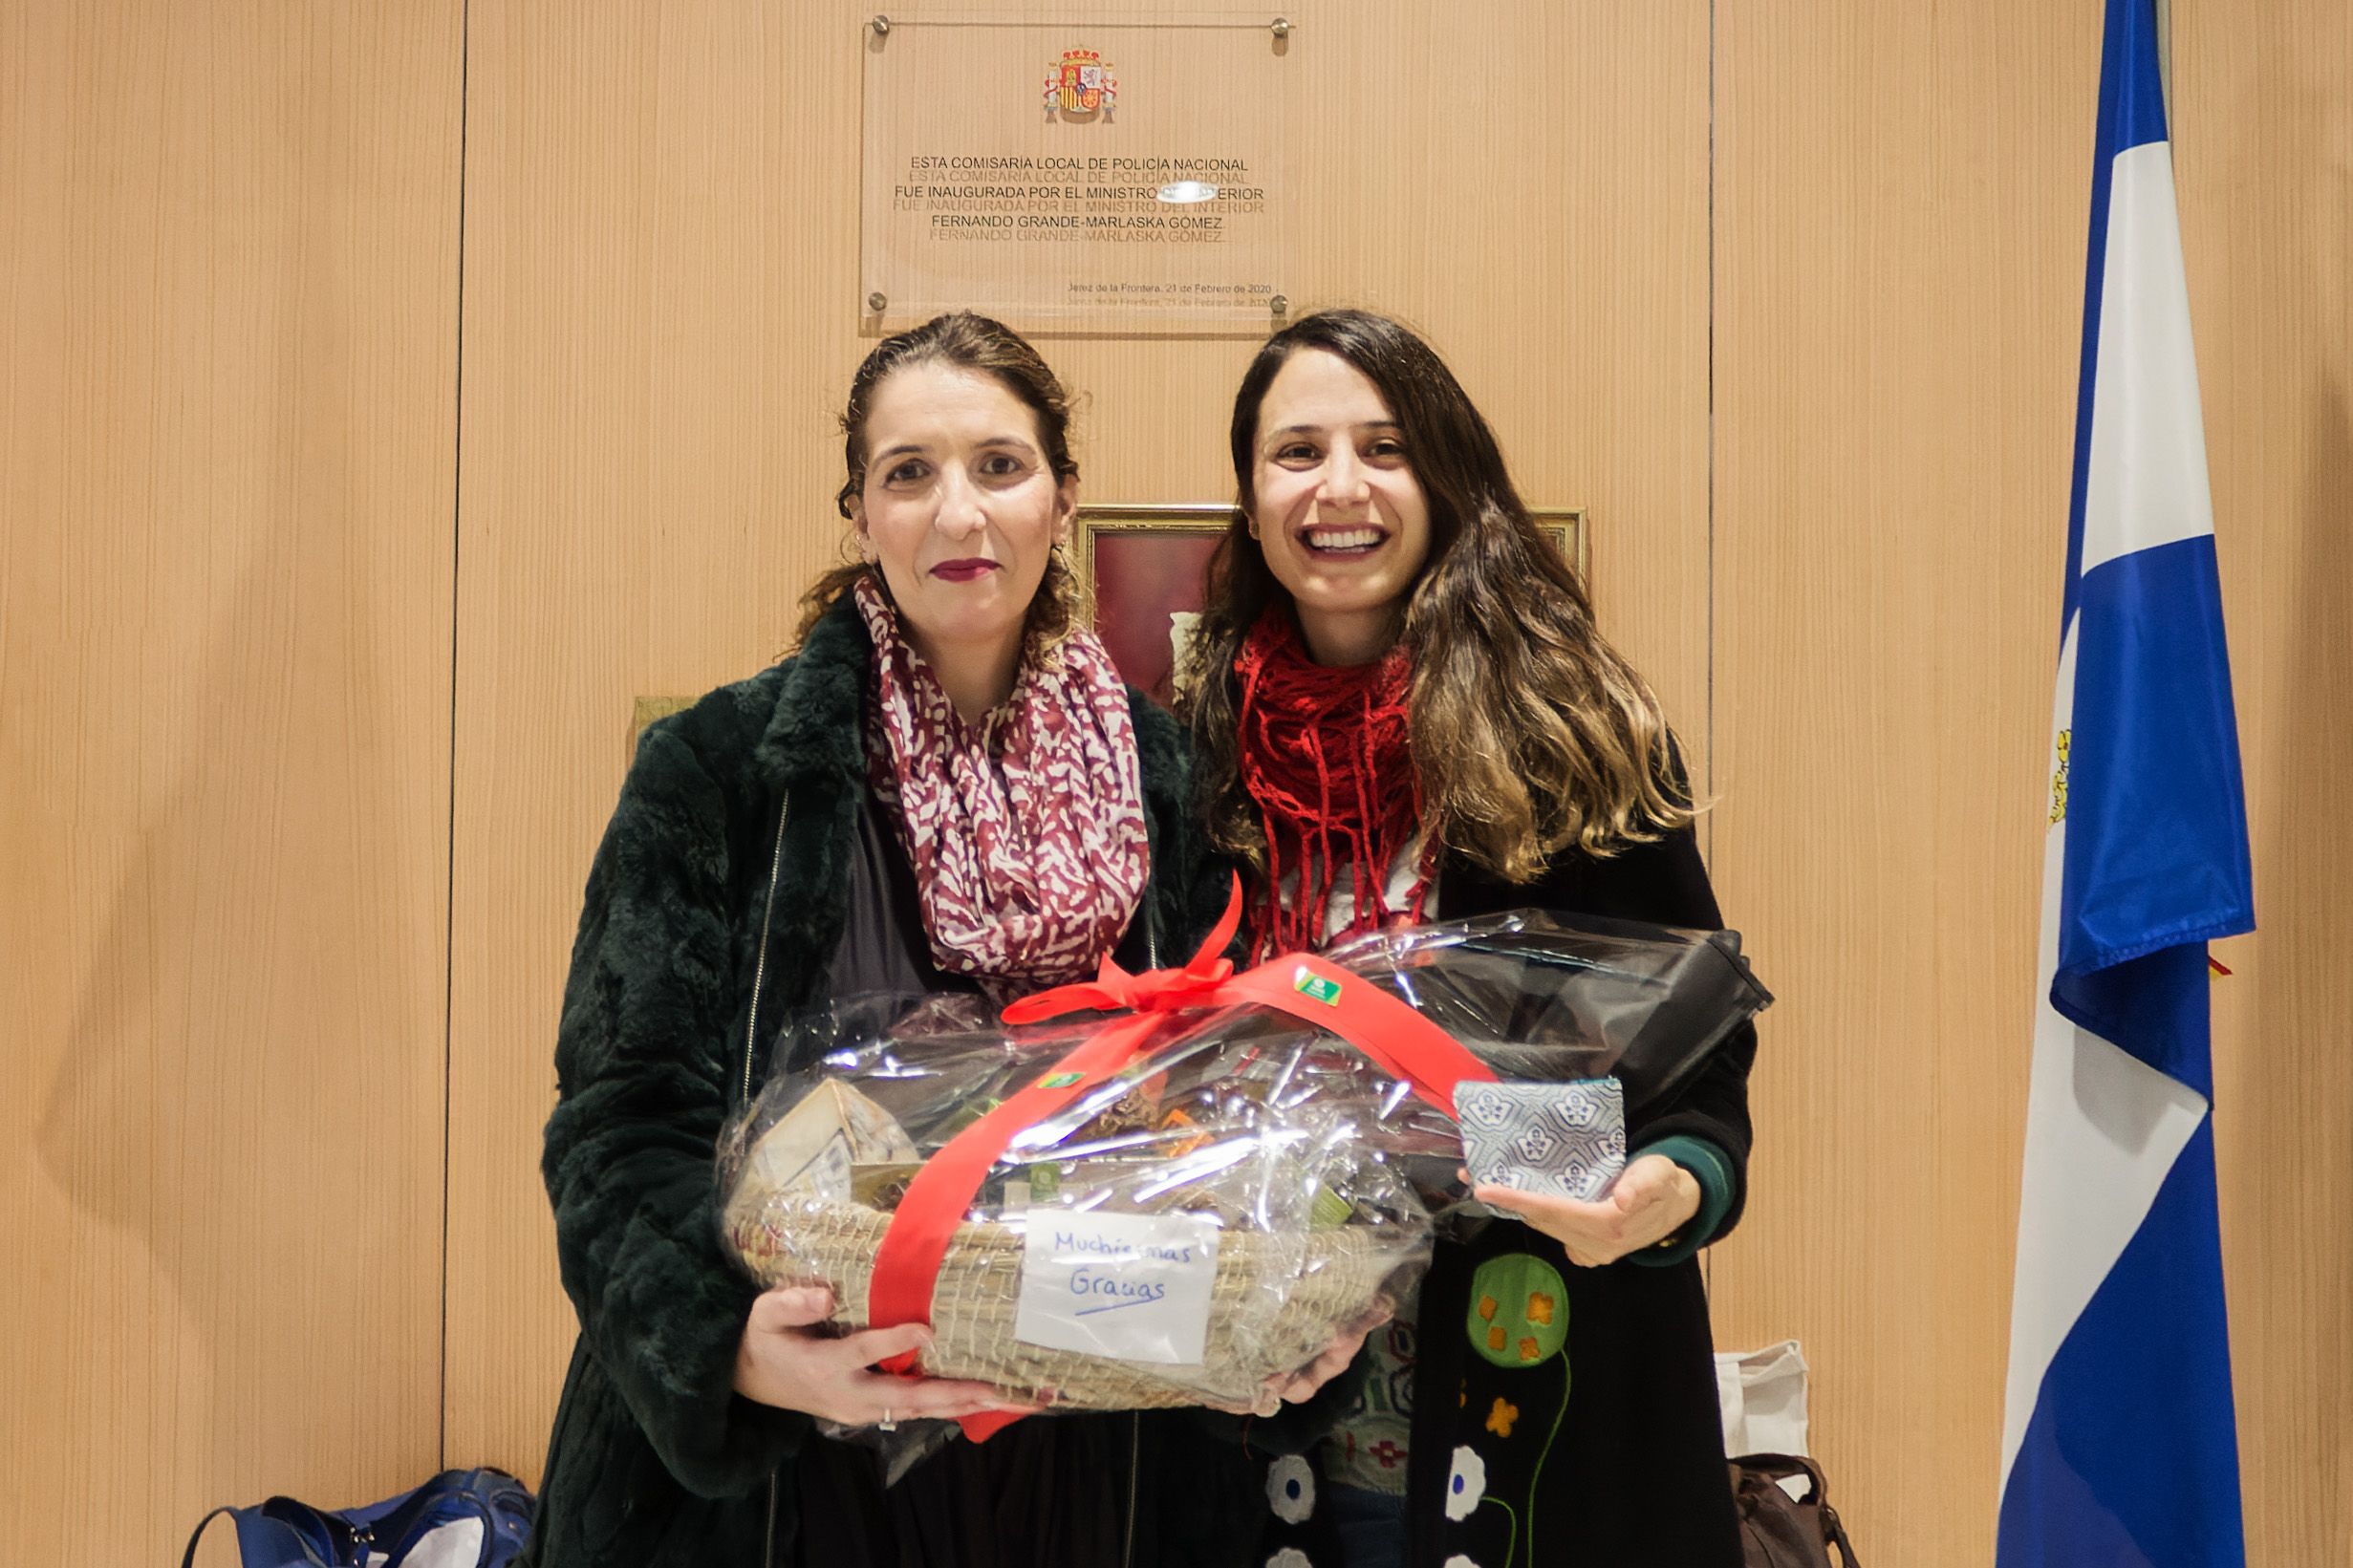 María Cruz, en la derecha, entregando a María Gracia, en la izquierda, la cesta navideña en la sede de la Comisaría jerezana. 